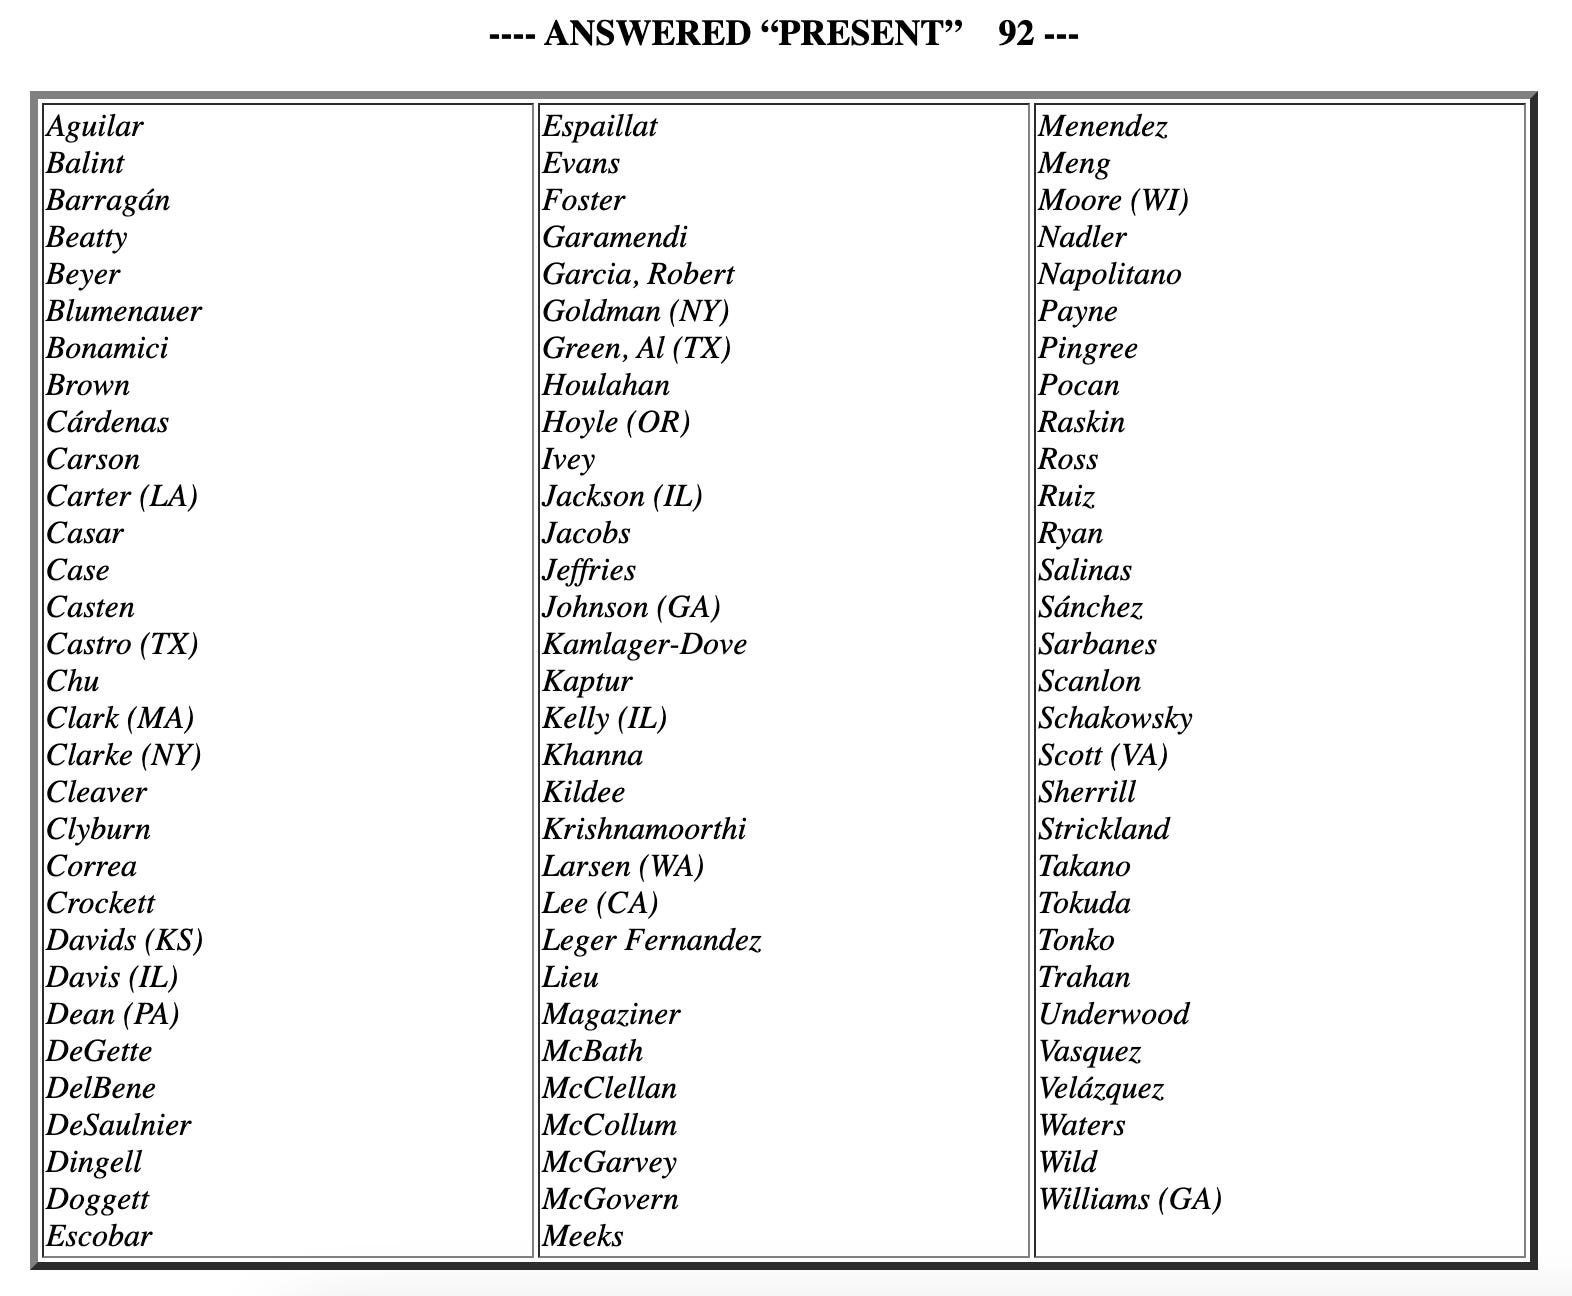 Die 92 Demokraten im Repräsentantenhaus, die für die Resolution „anwesend“ gestimmt haben.